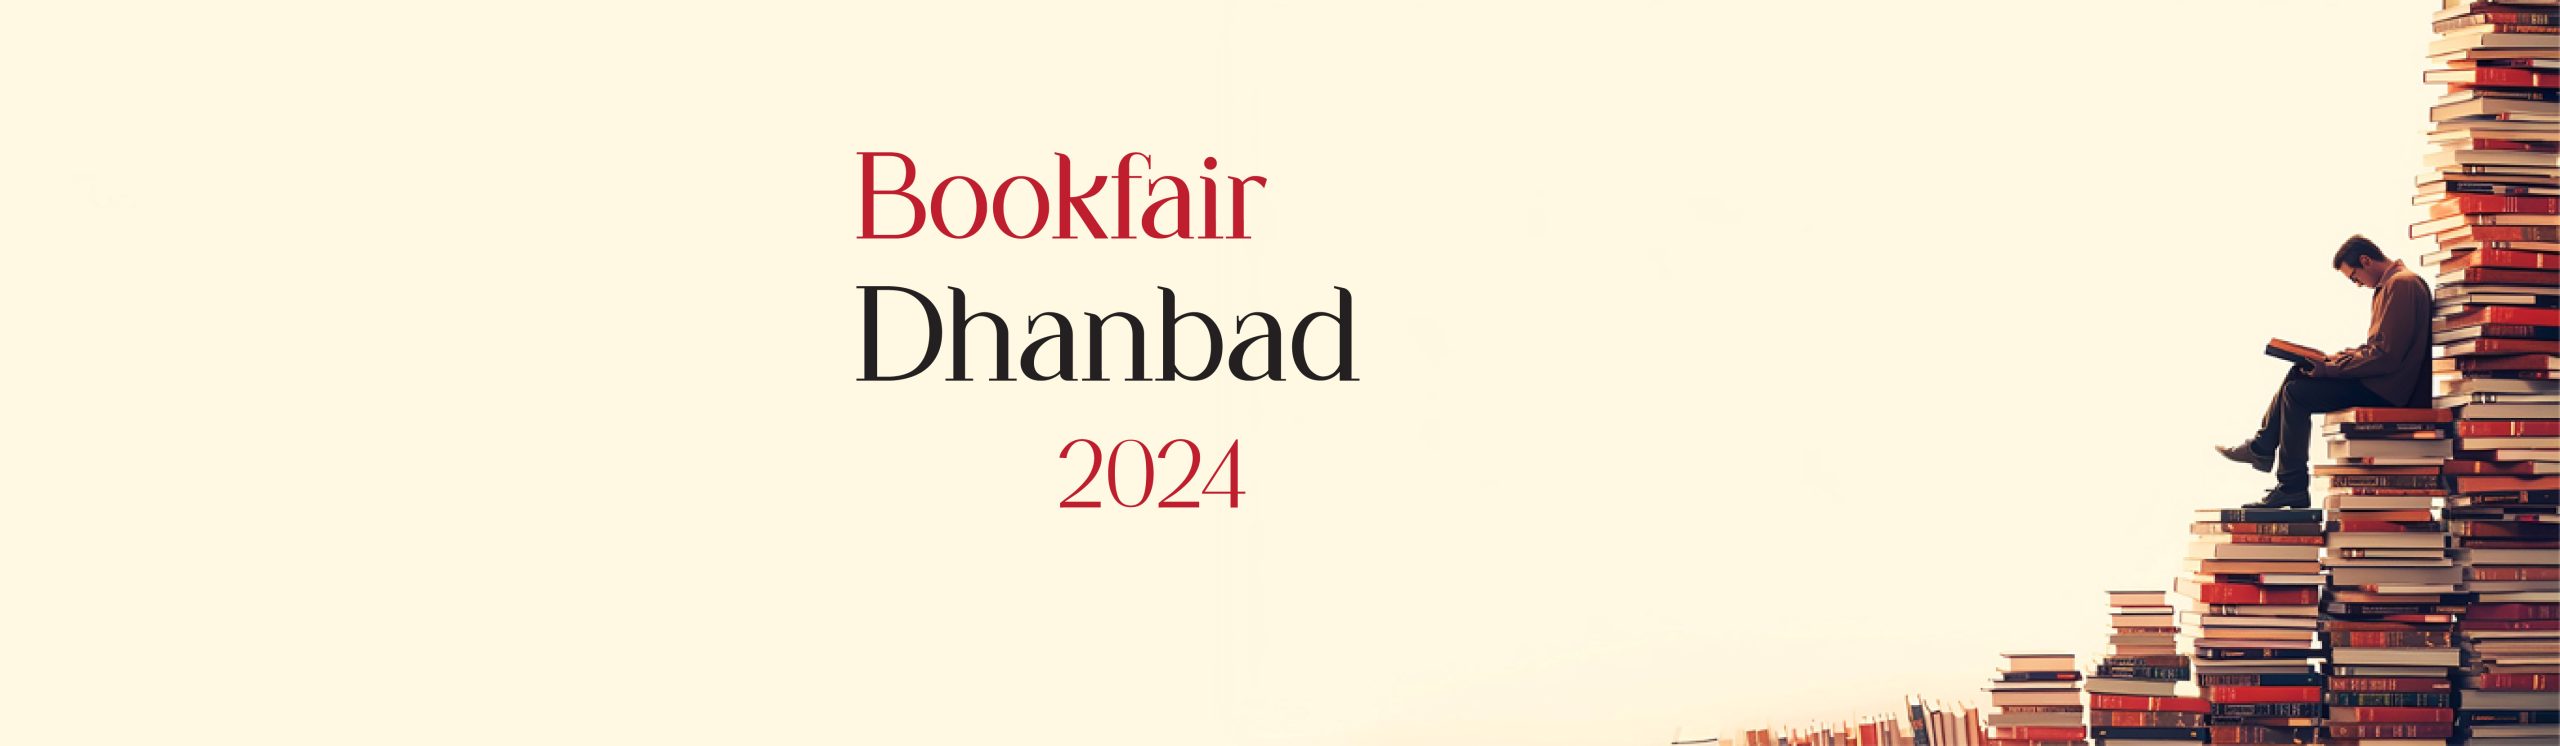 BookFair2024-Dhanbad